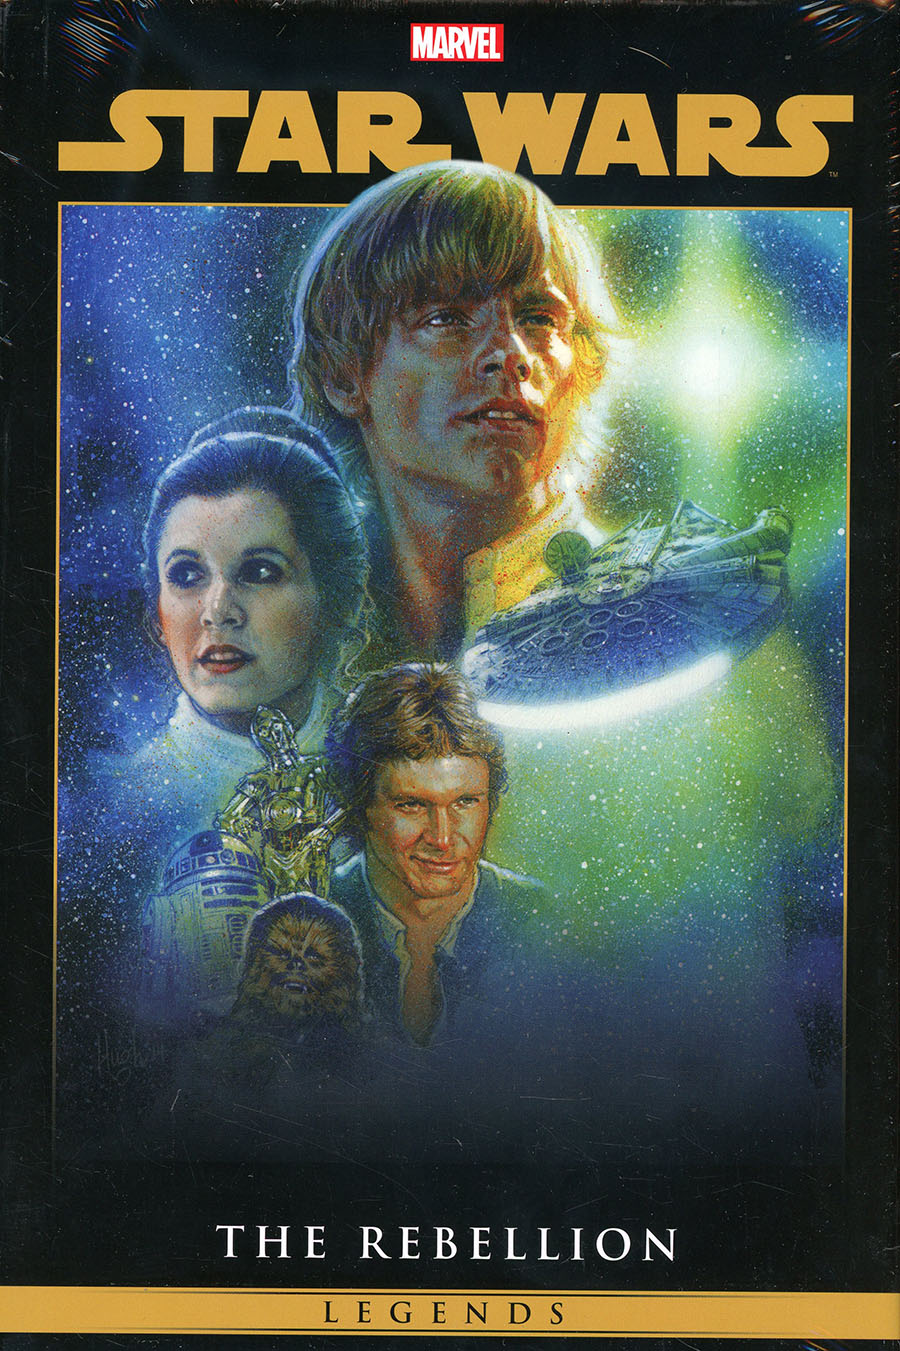 Star Wars Legends The Rebellion Omnibus Vol 1 HC Direct Market Hugh Fleming Variant Cover